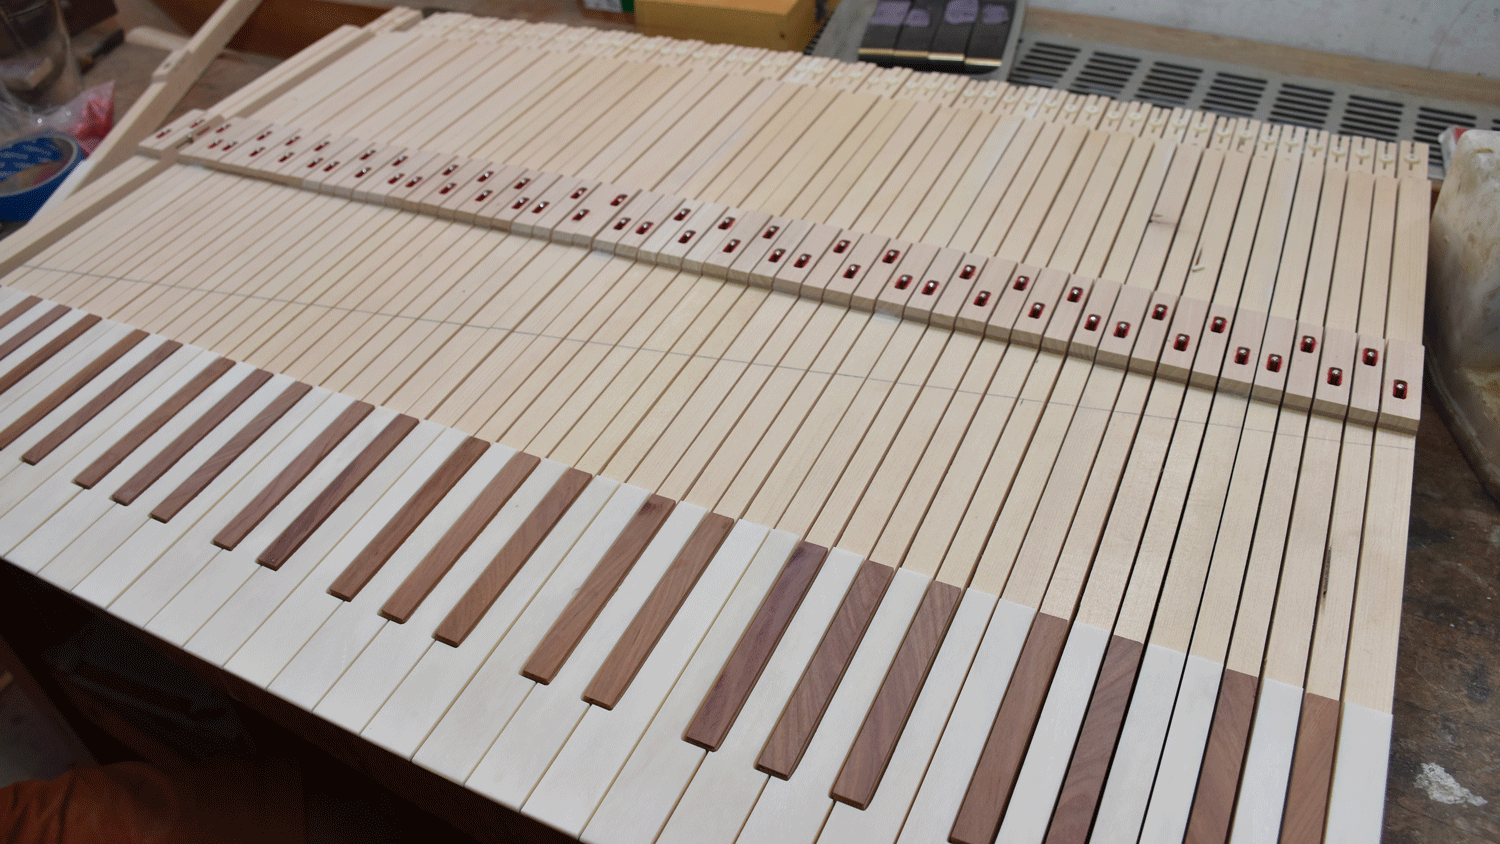 Die Klaviatur der neuen Orgel. Auch hier wird jedes Stück in Feinstarbeit einzeln gebaut. 